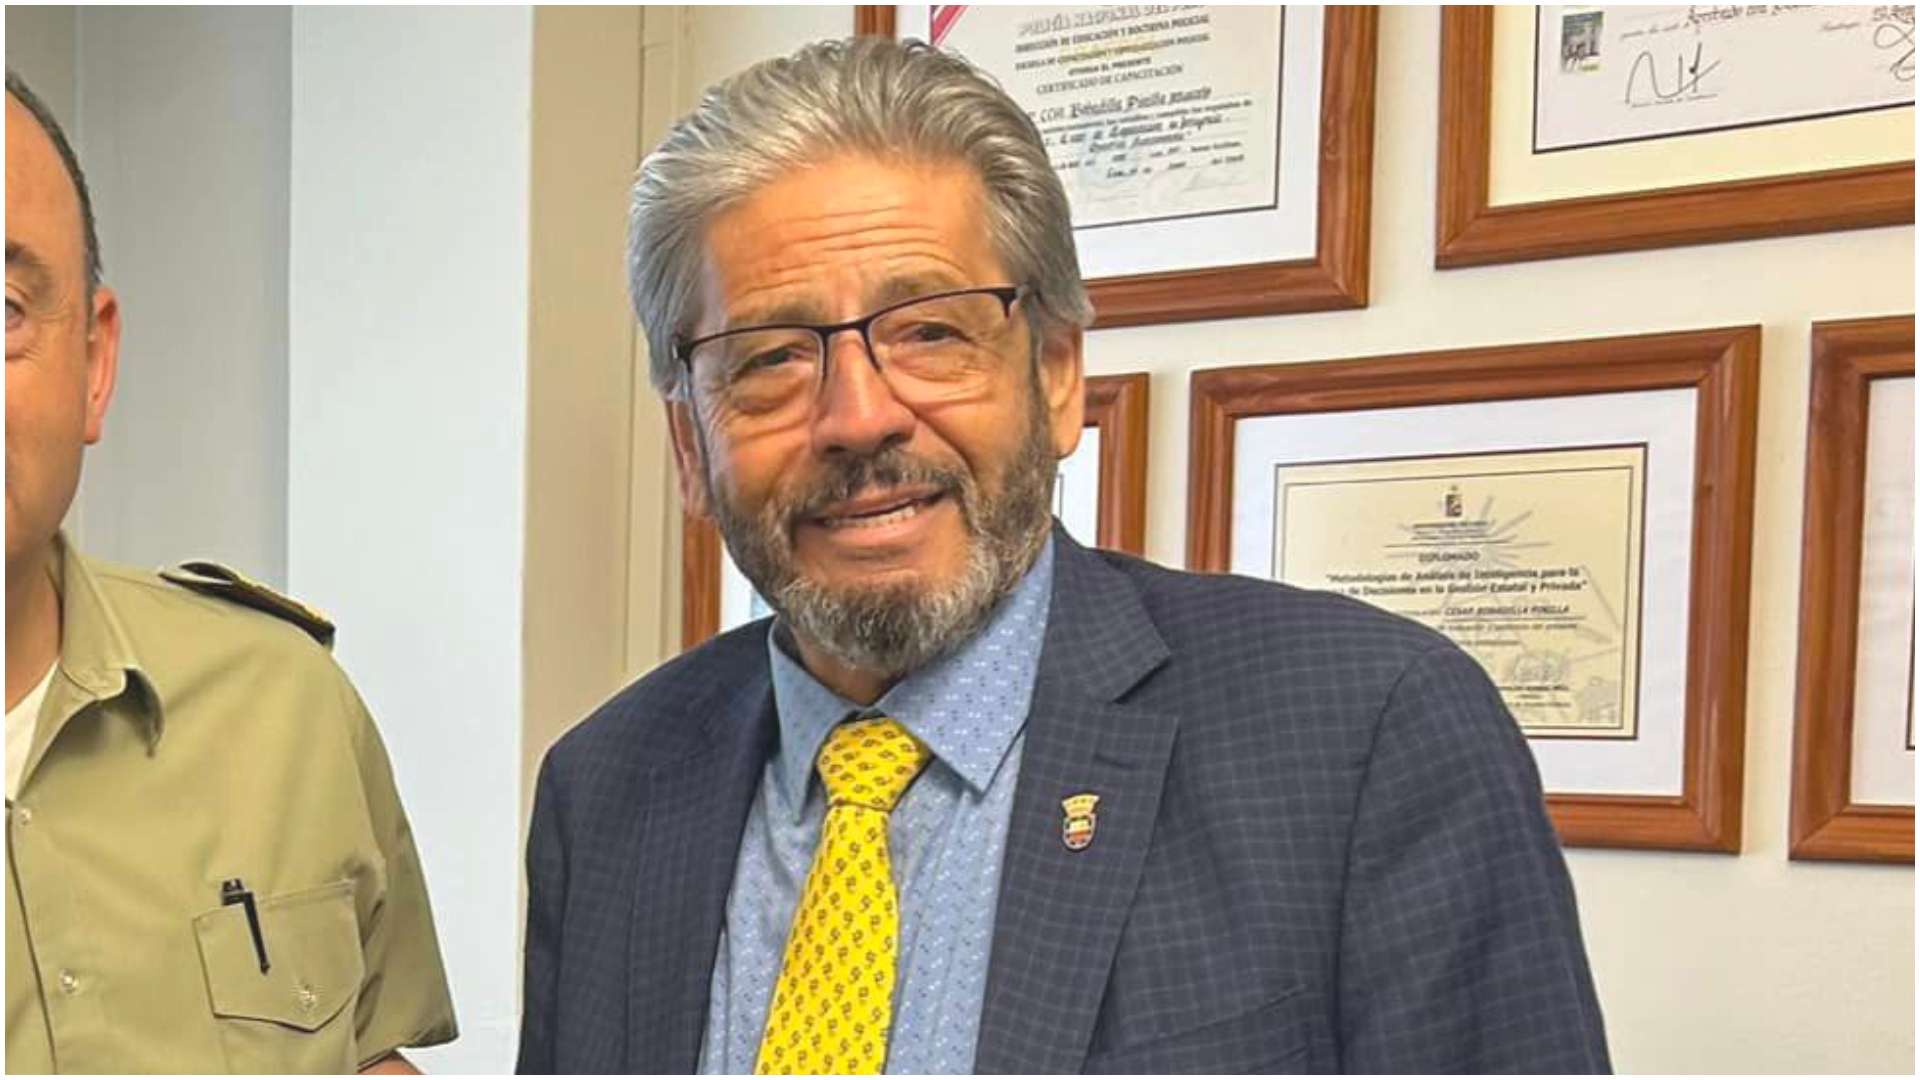 Encuentran muerto a alcalde de Florida, Jorge Roa, luego de que anunciara  su renuncia por haber chocado ebrio - Meganoticias